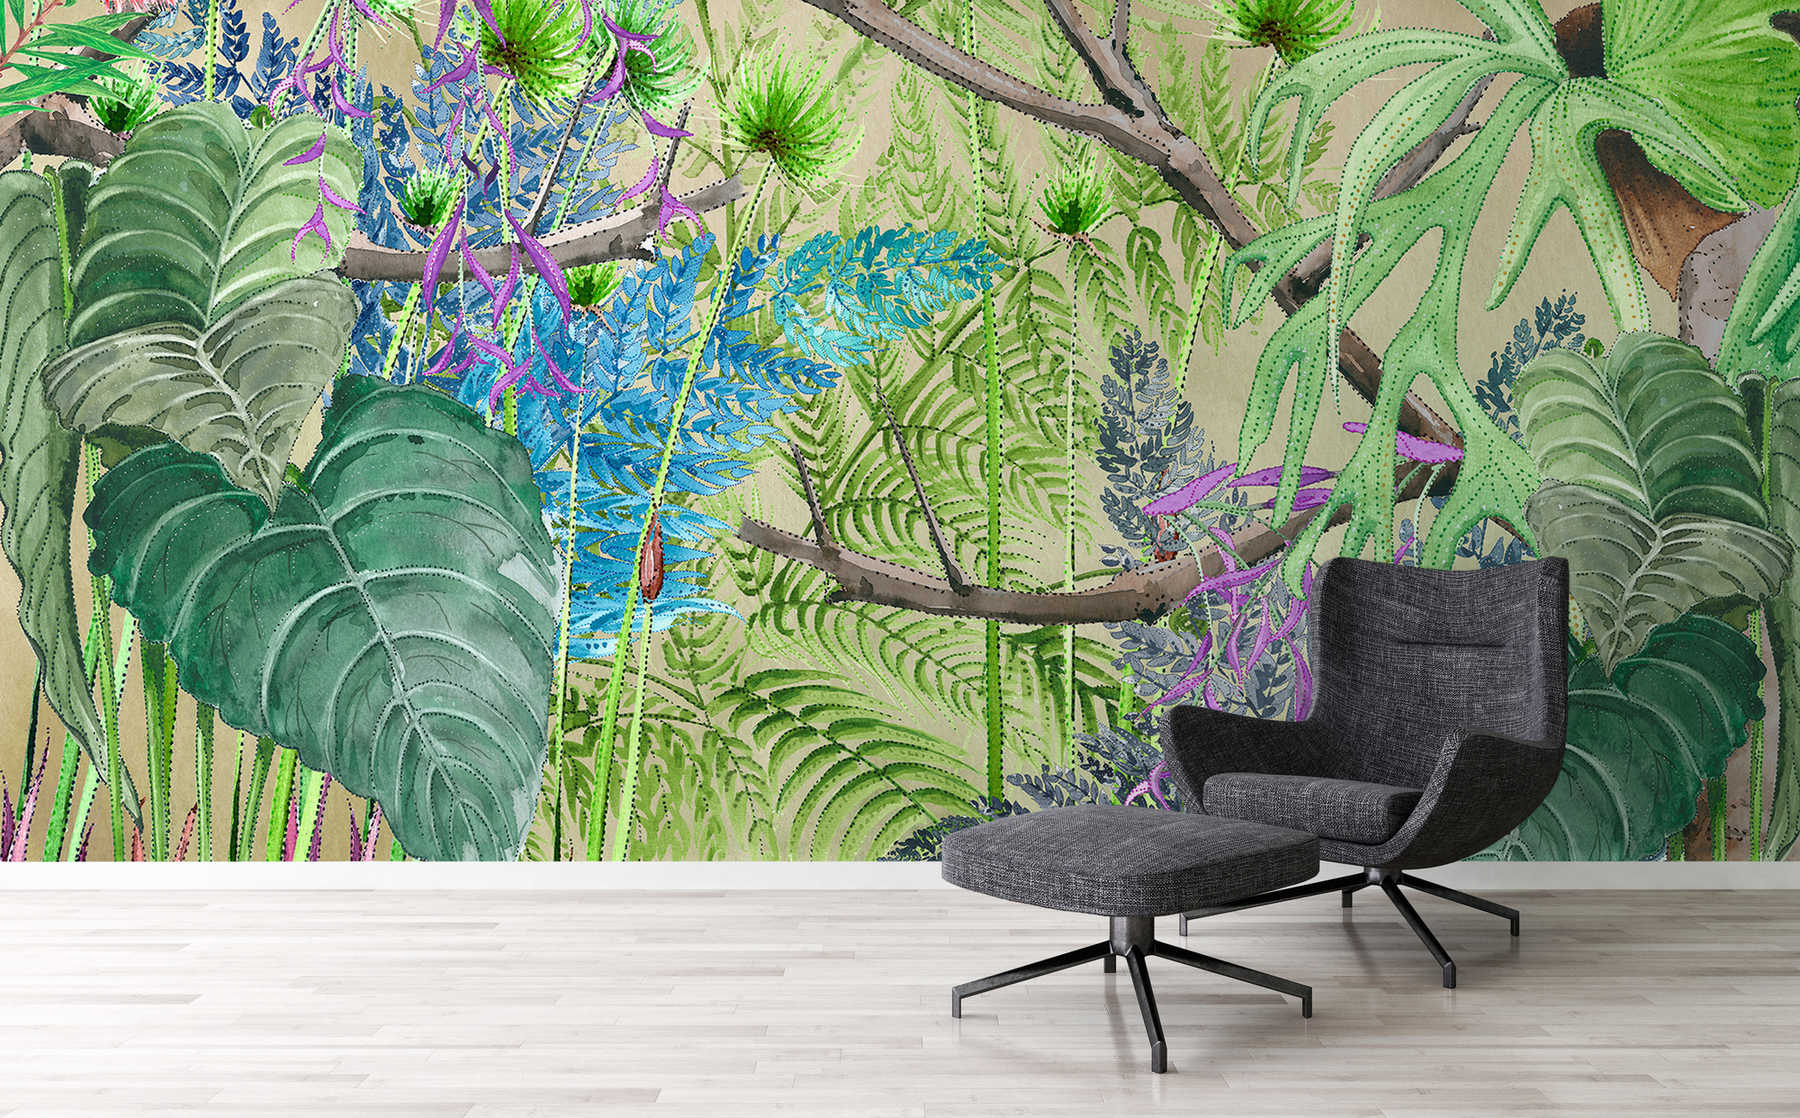             Dschungel Fototapete mit Blumen in Blau und Grün auf Strukturvlies
        